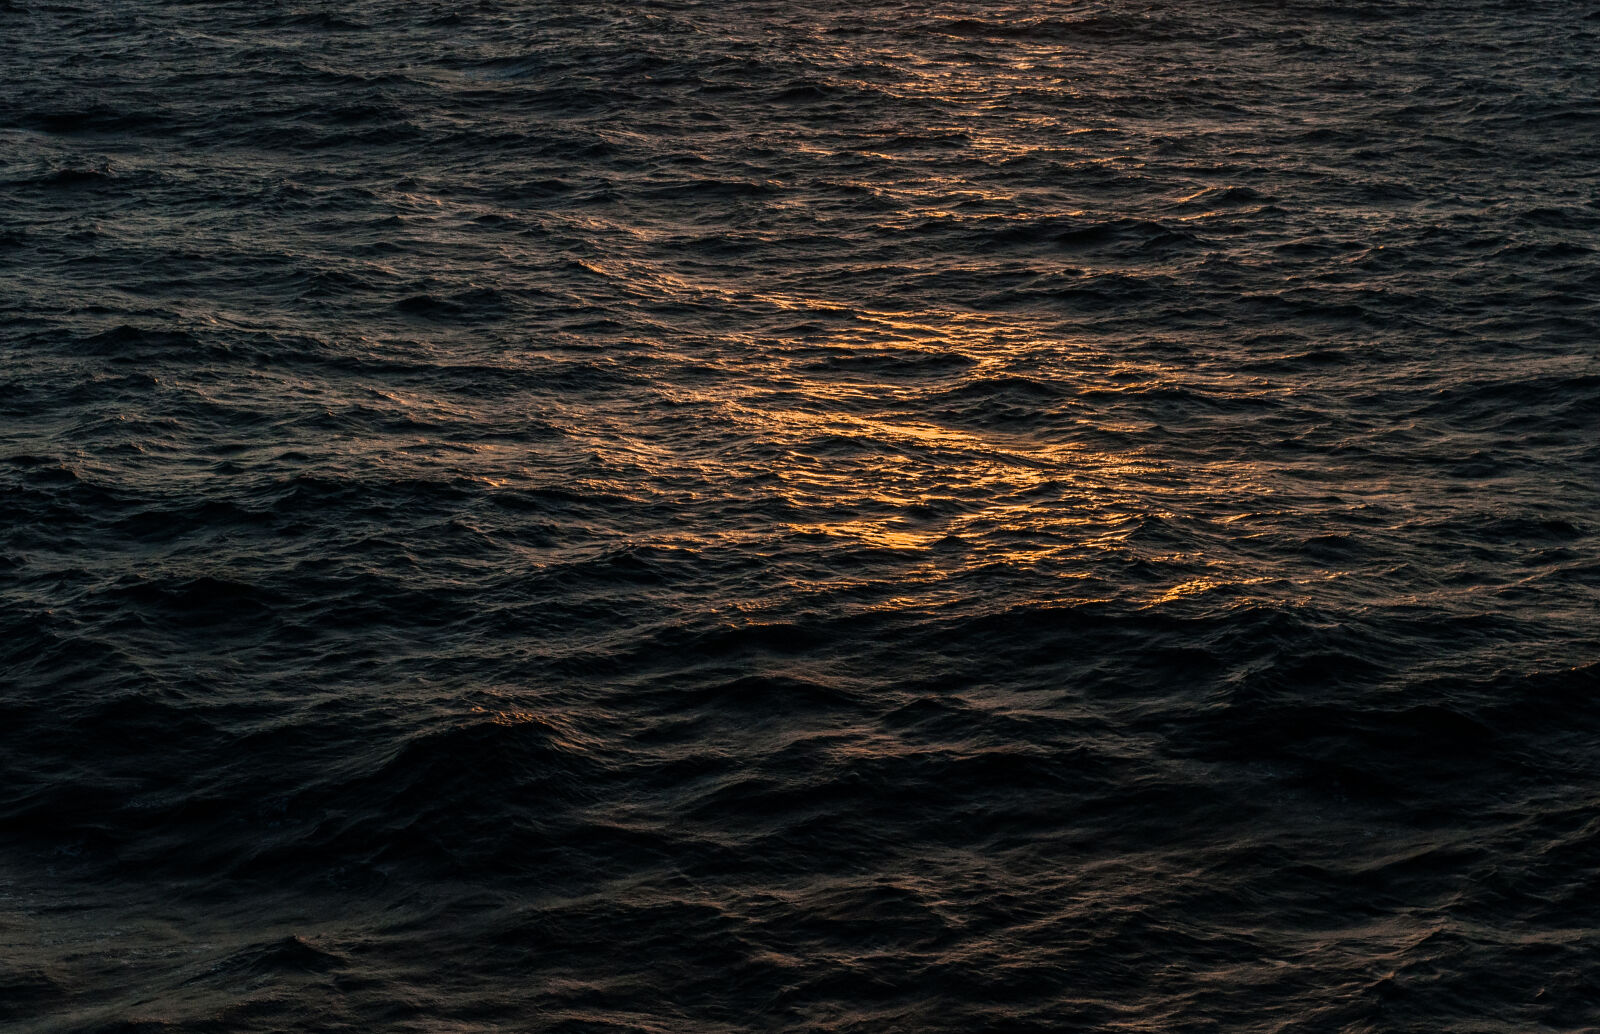 Nikon D90 + Nikon AF Nikkor 50mm F1.8D sample photo. Ocean, sunrise, water, waves photography